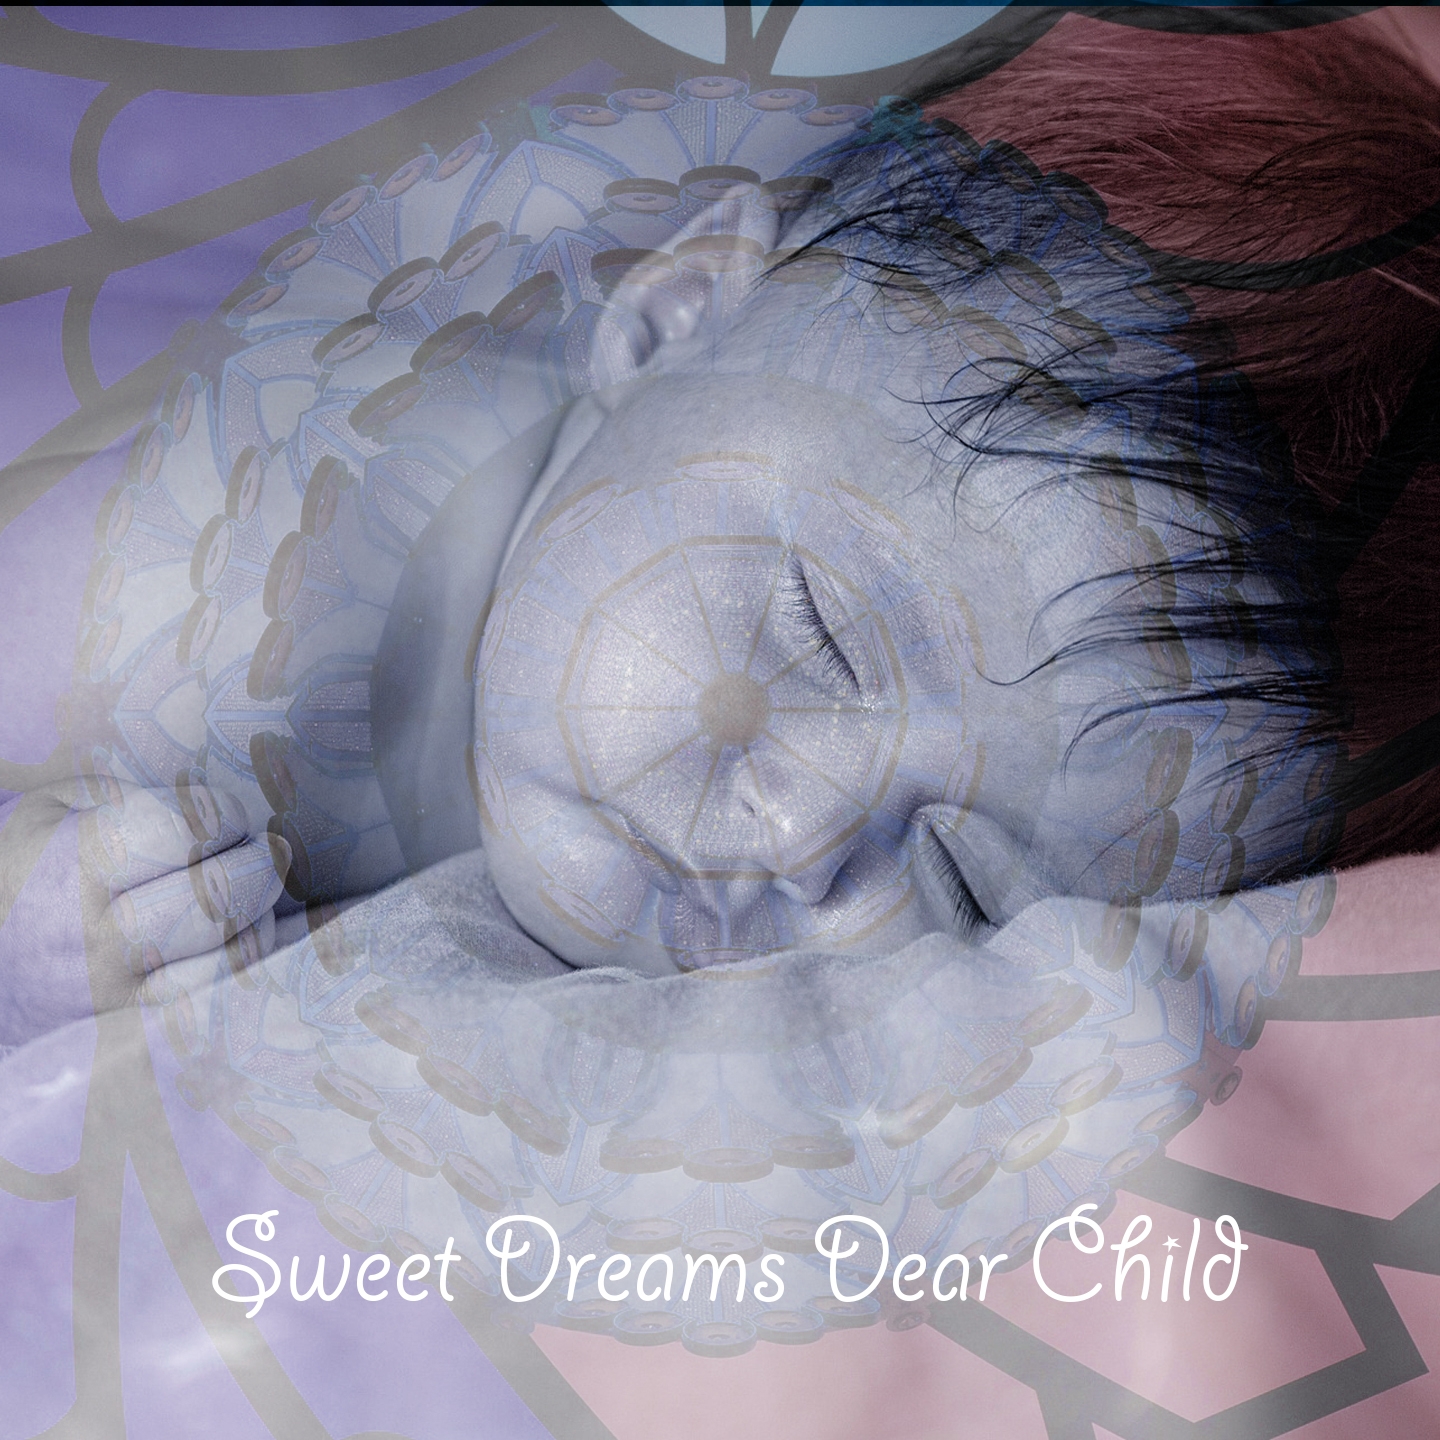 Sweet Dreams Dear Child